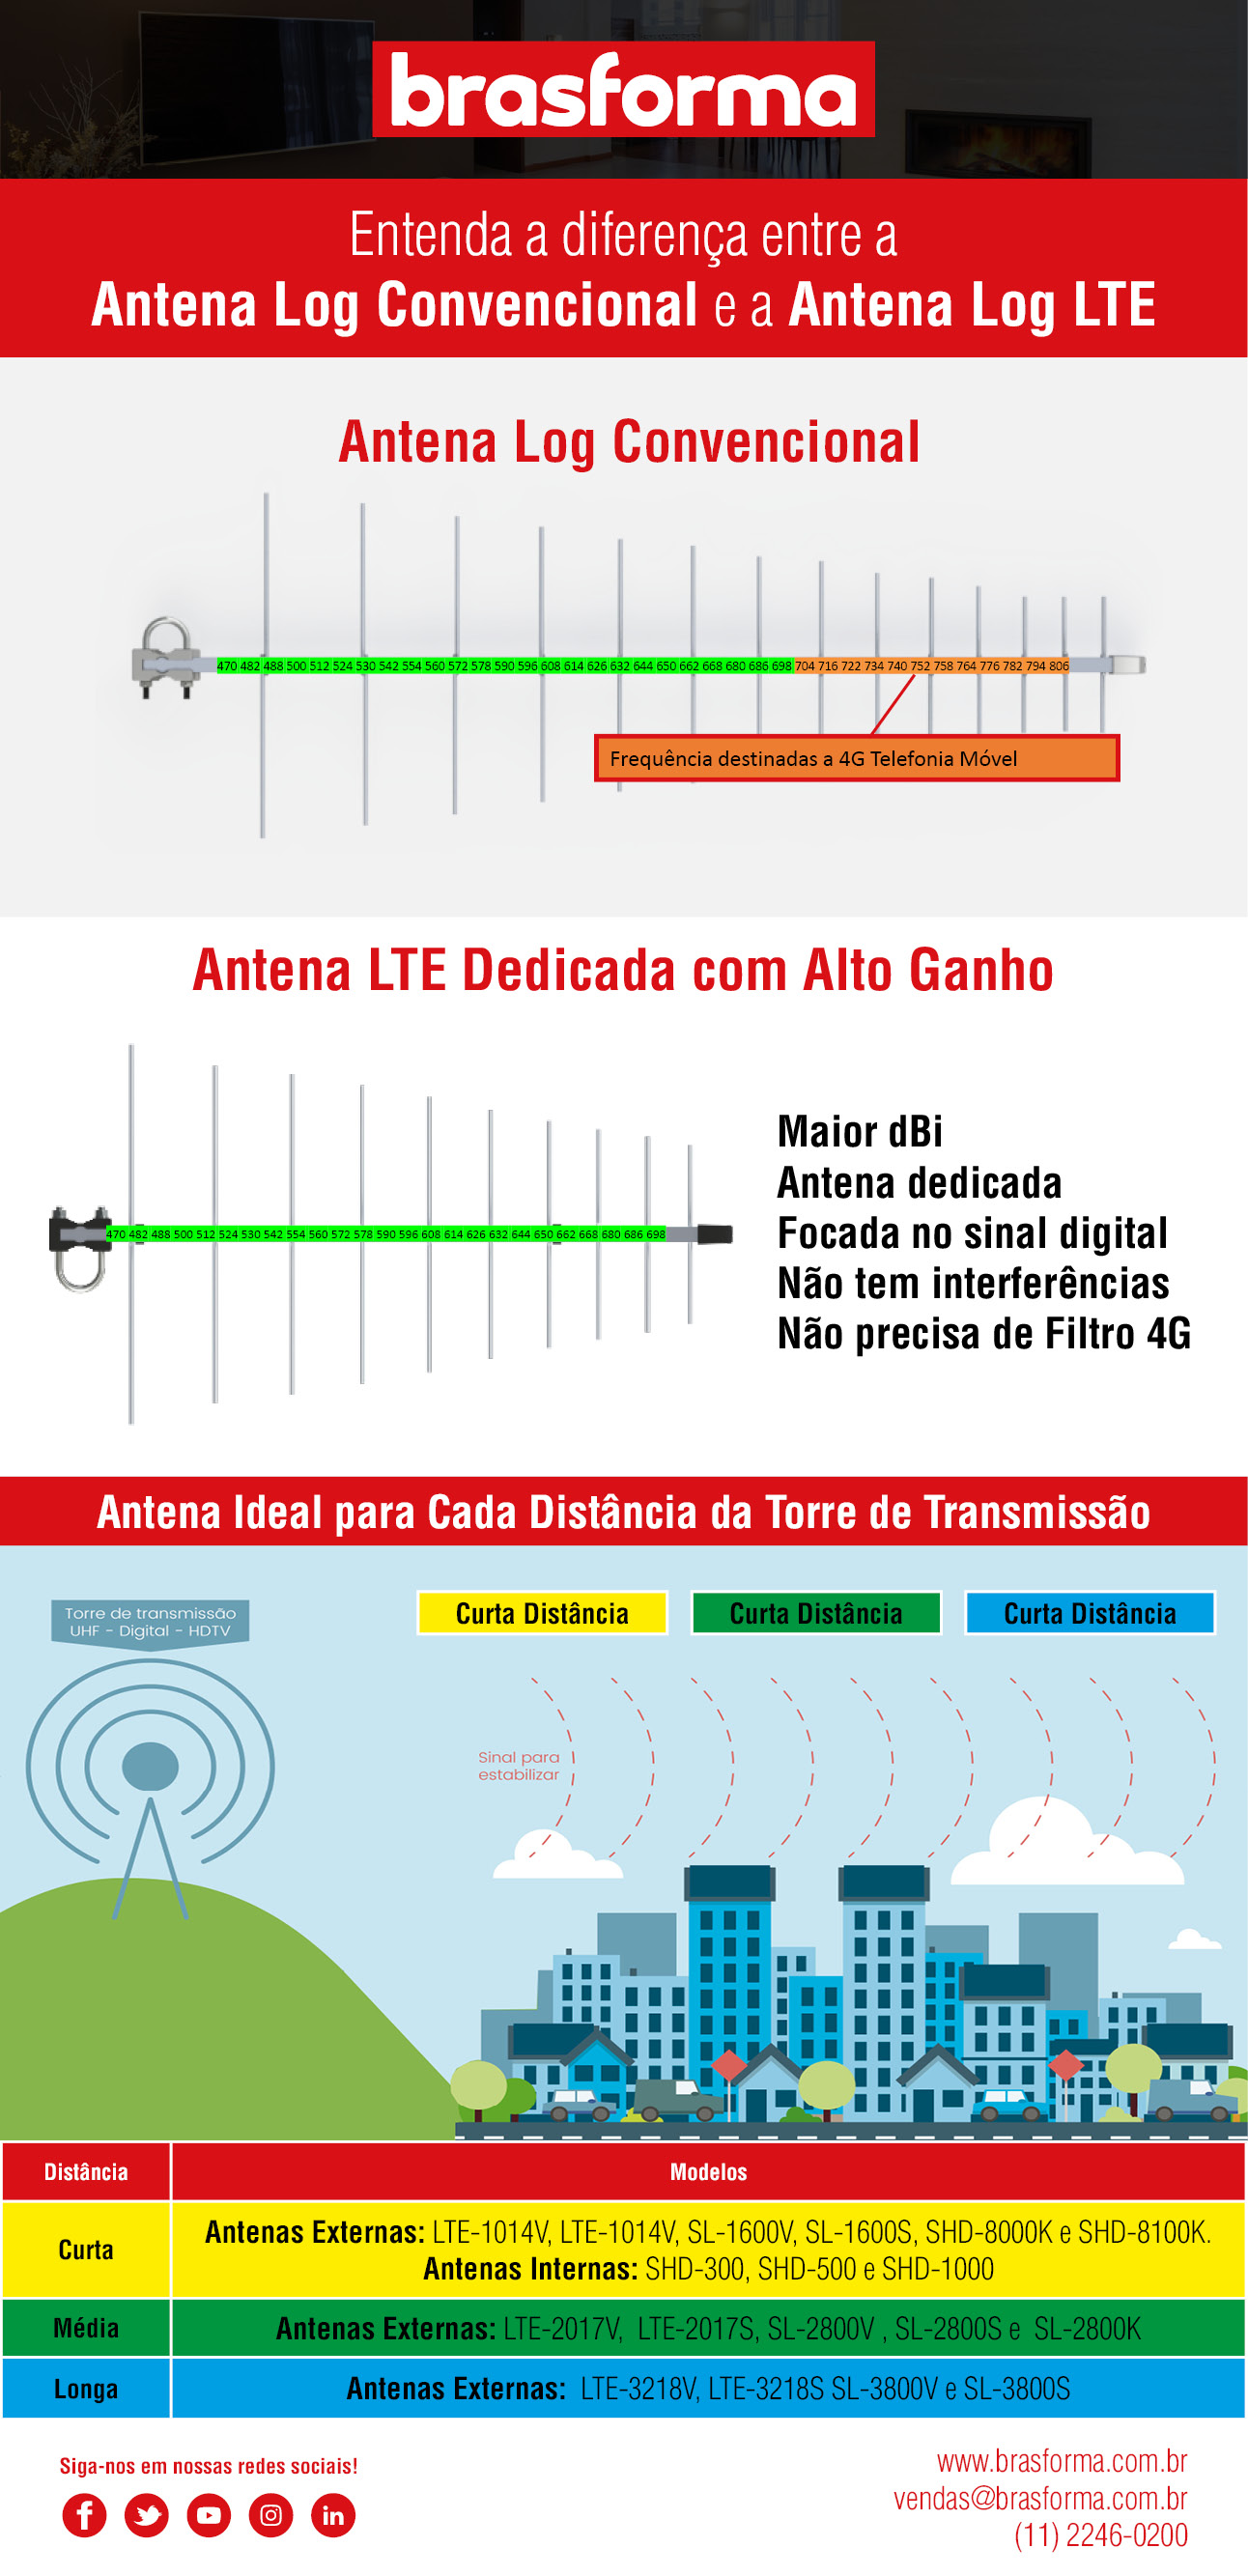 2020 Antena Da RaÃƒÂ§a